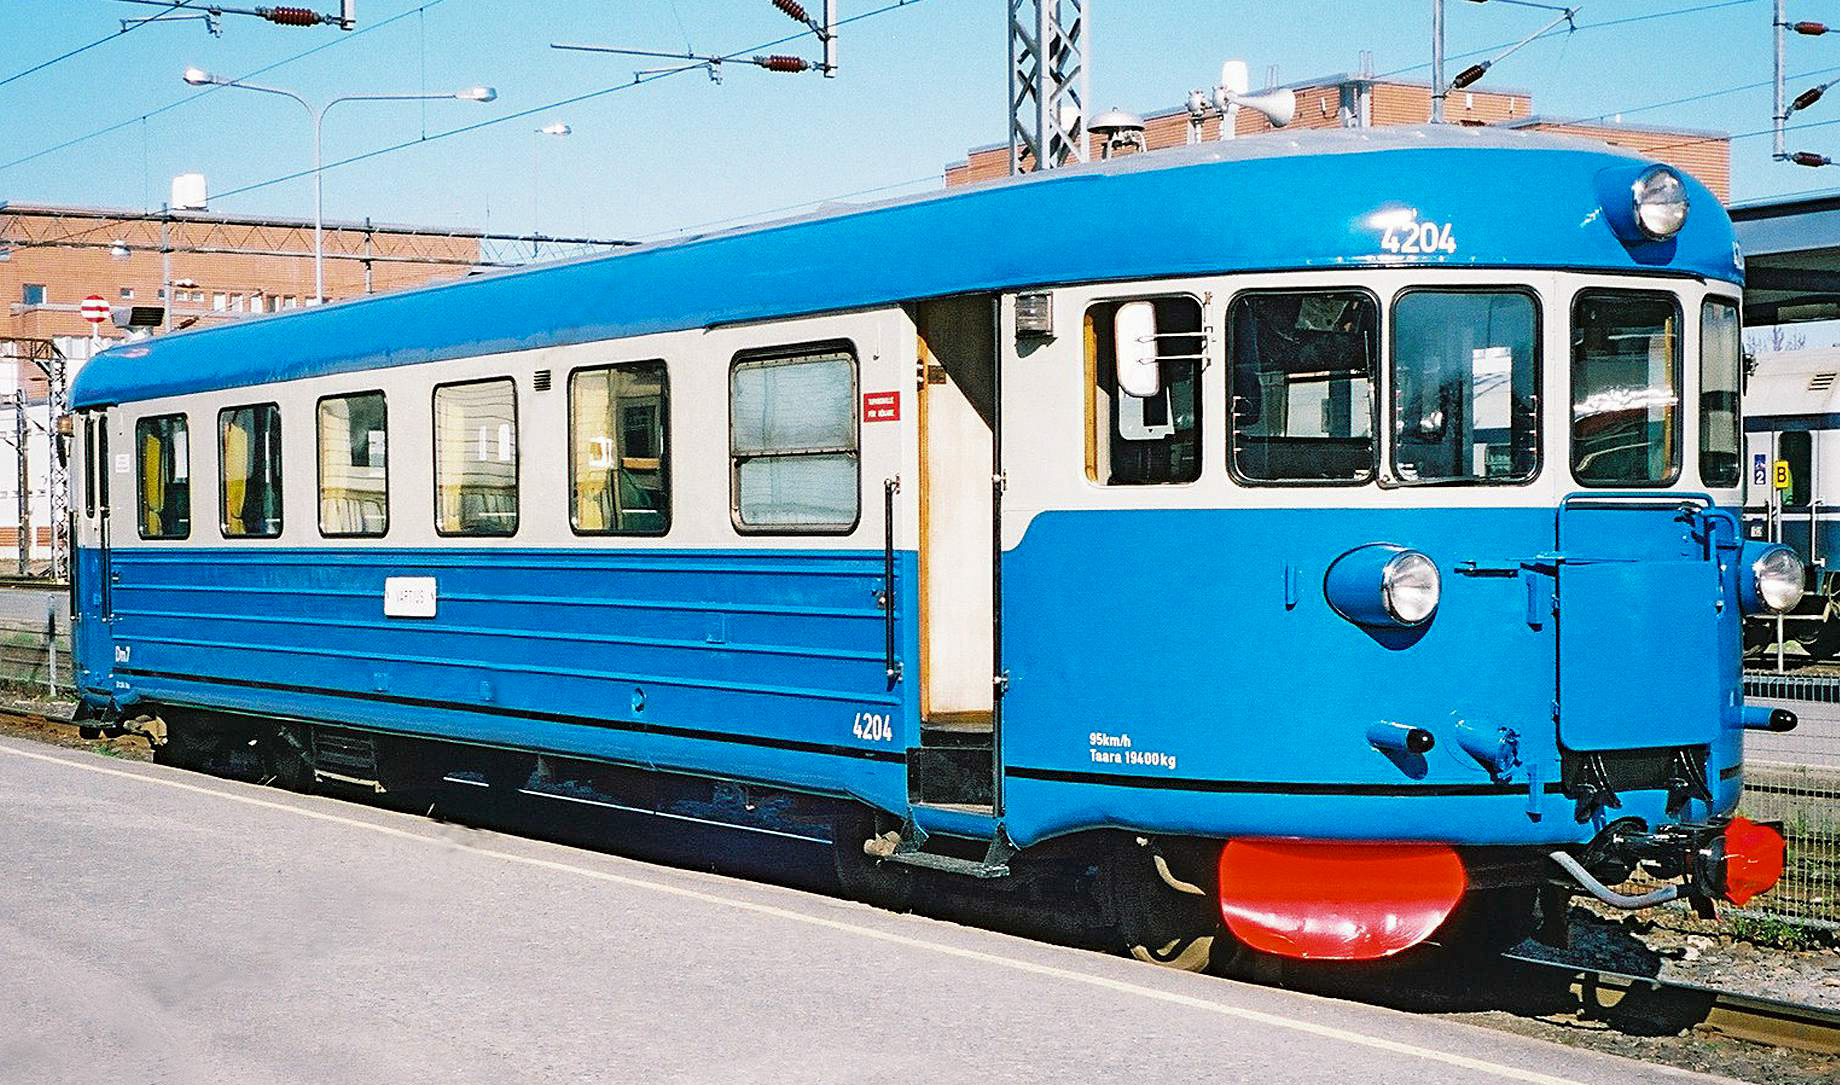 Einzigartige Bahnreise durch Finnland mit einer Dampfzugfahrt und einer Sonderfahrt im historischen blauen Dm7-Triebwagen. Bahnreise, Eisenbahnreise, Zugreise, Finnland, Bahntouristik, Eisenbahnexpterten | IGE  - IGE Erlebnisreisen | 